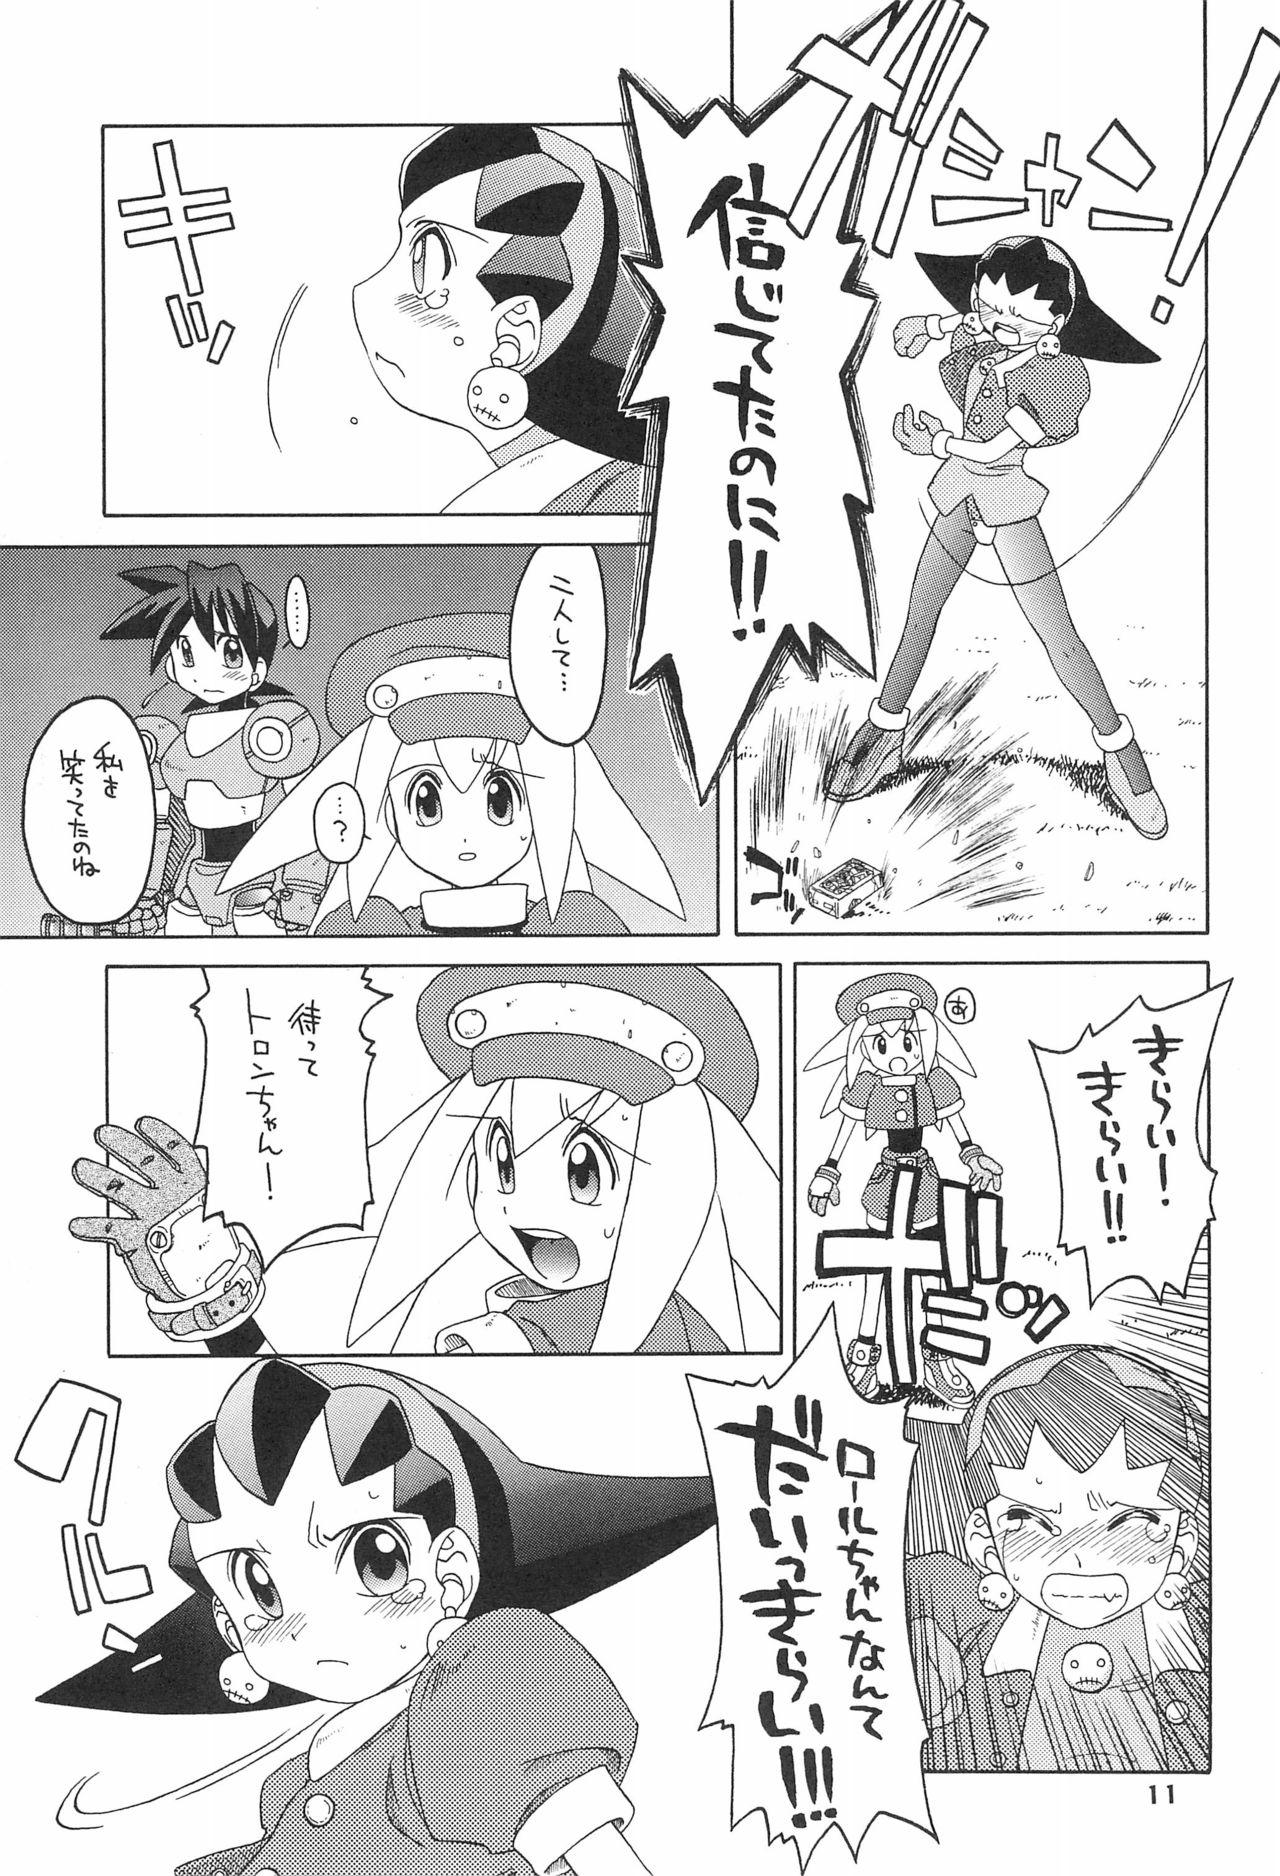 Cut Kinjirareta Asobi - Mega man legends Pierced - Page 11